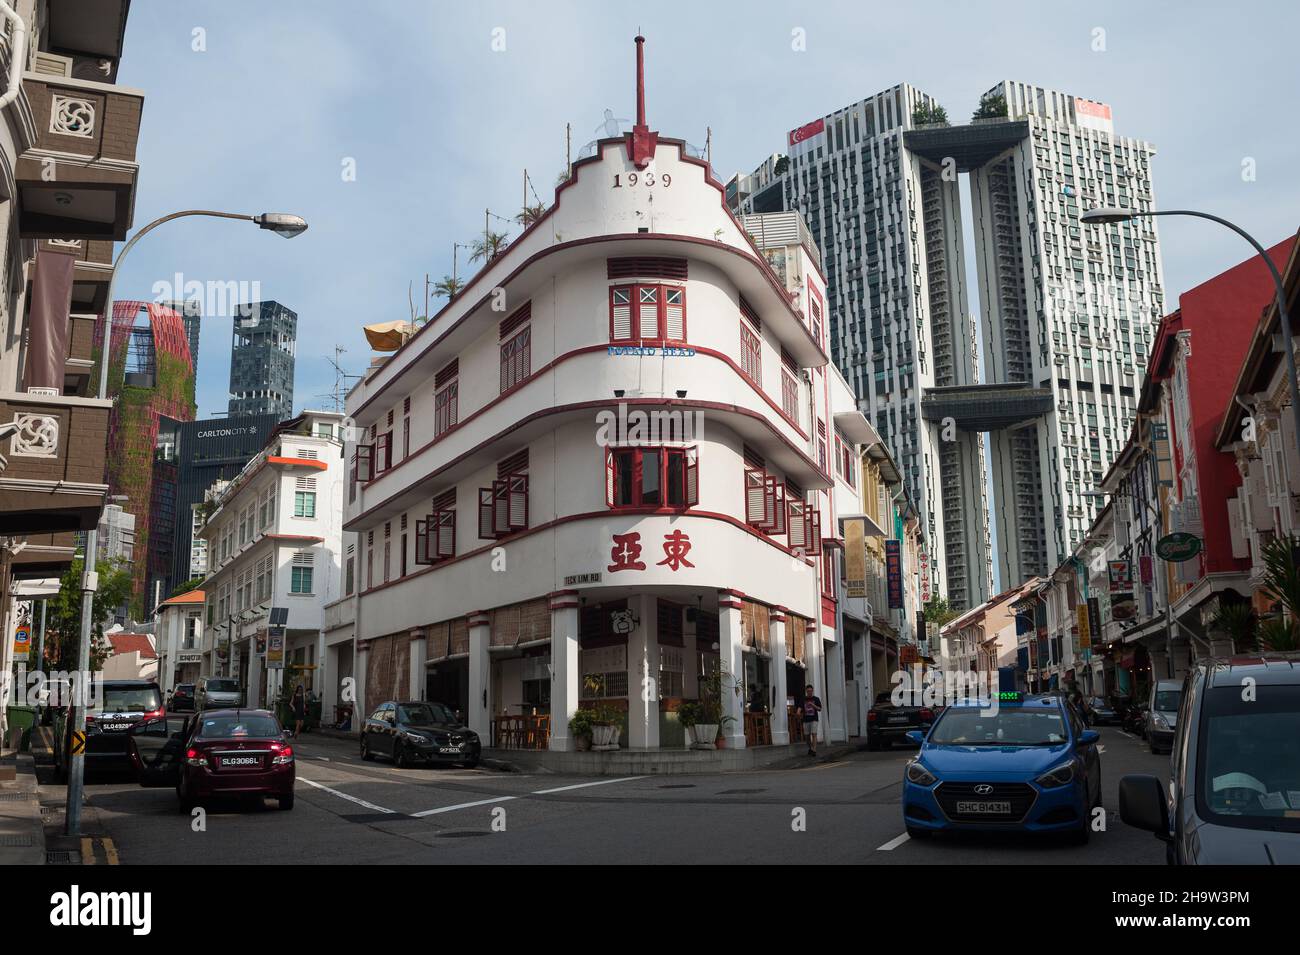 '19.07.2017, Singapore, Singapore - paesaggio urbano con negozi storici, il ristorante Potato Head in un edificio Art Deco e l'alto residence Foto Stock